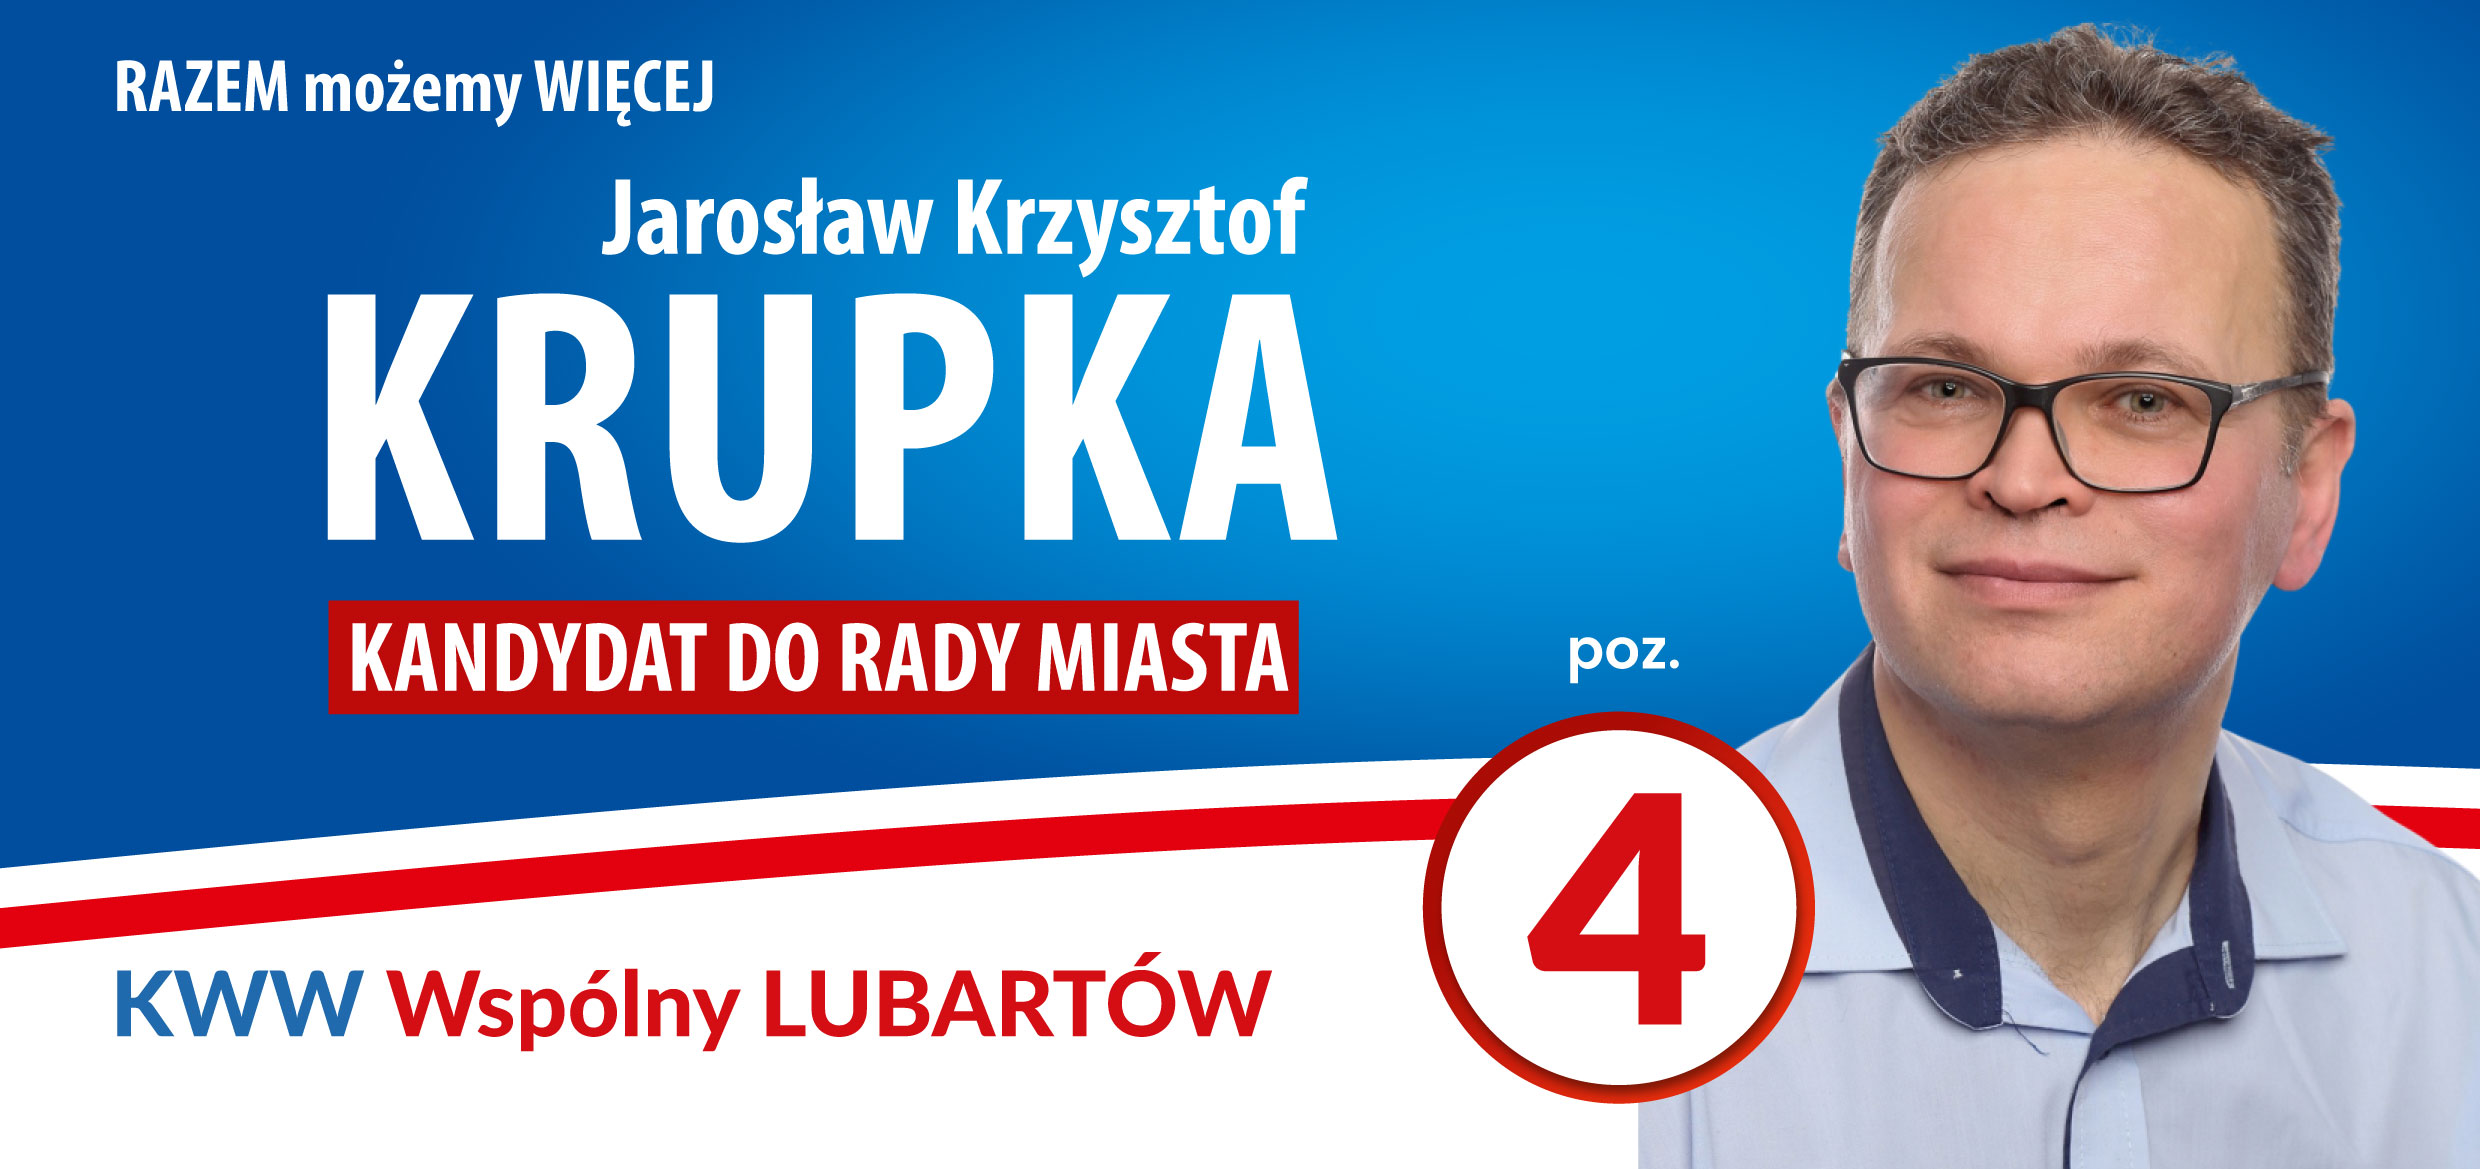 KRUPKA_Jarosław-1